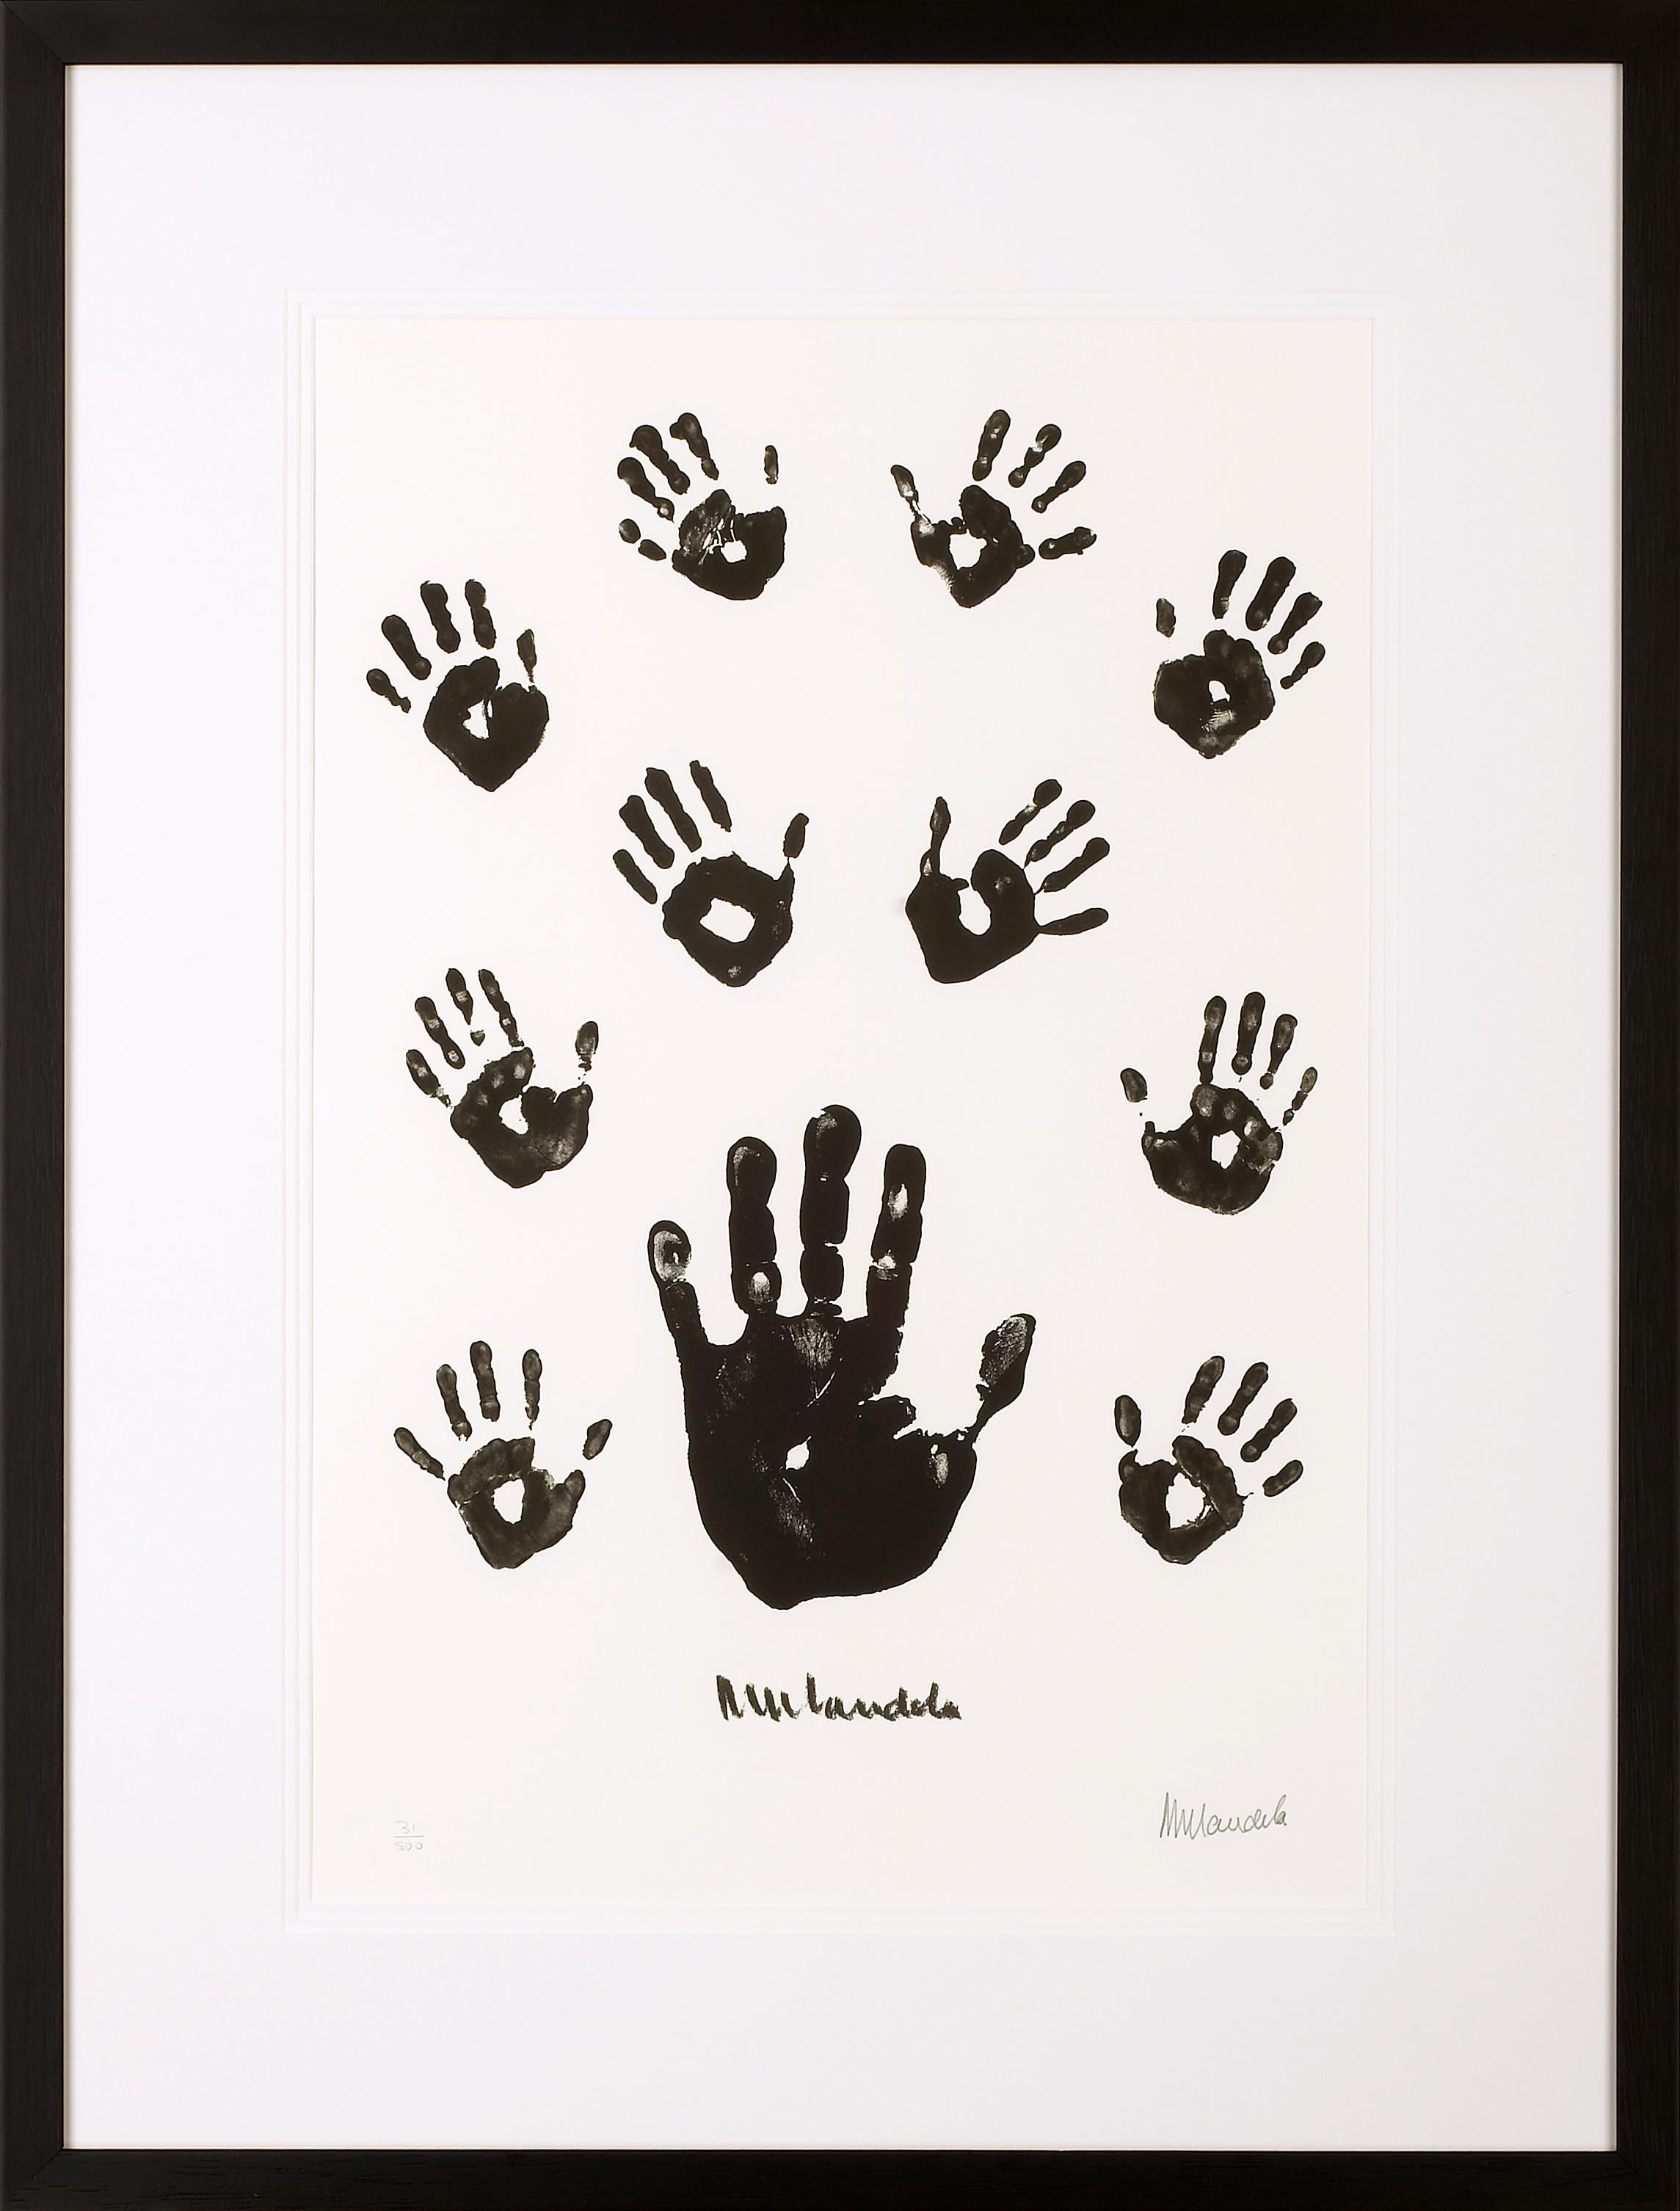 Nelson Mandela Figurative Print - Impressions of Africa - Mandela, Former South African President, Signed Artwork